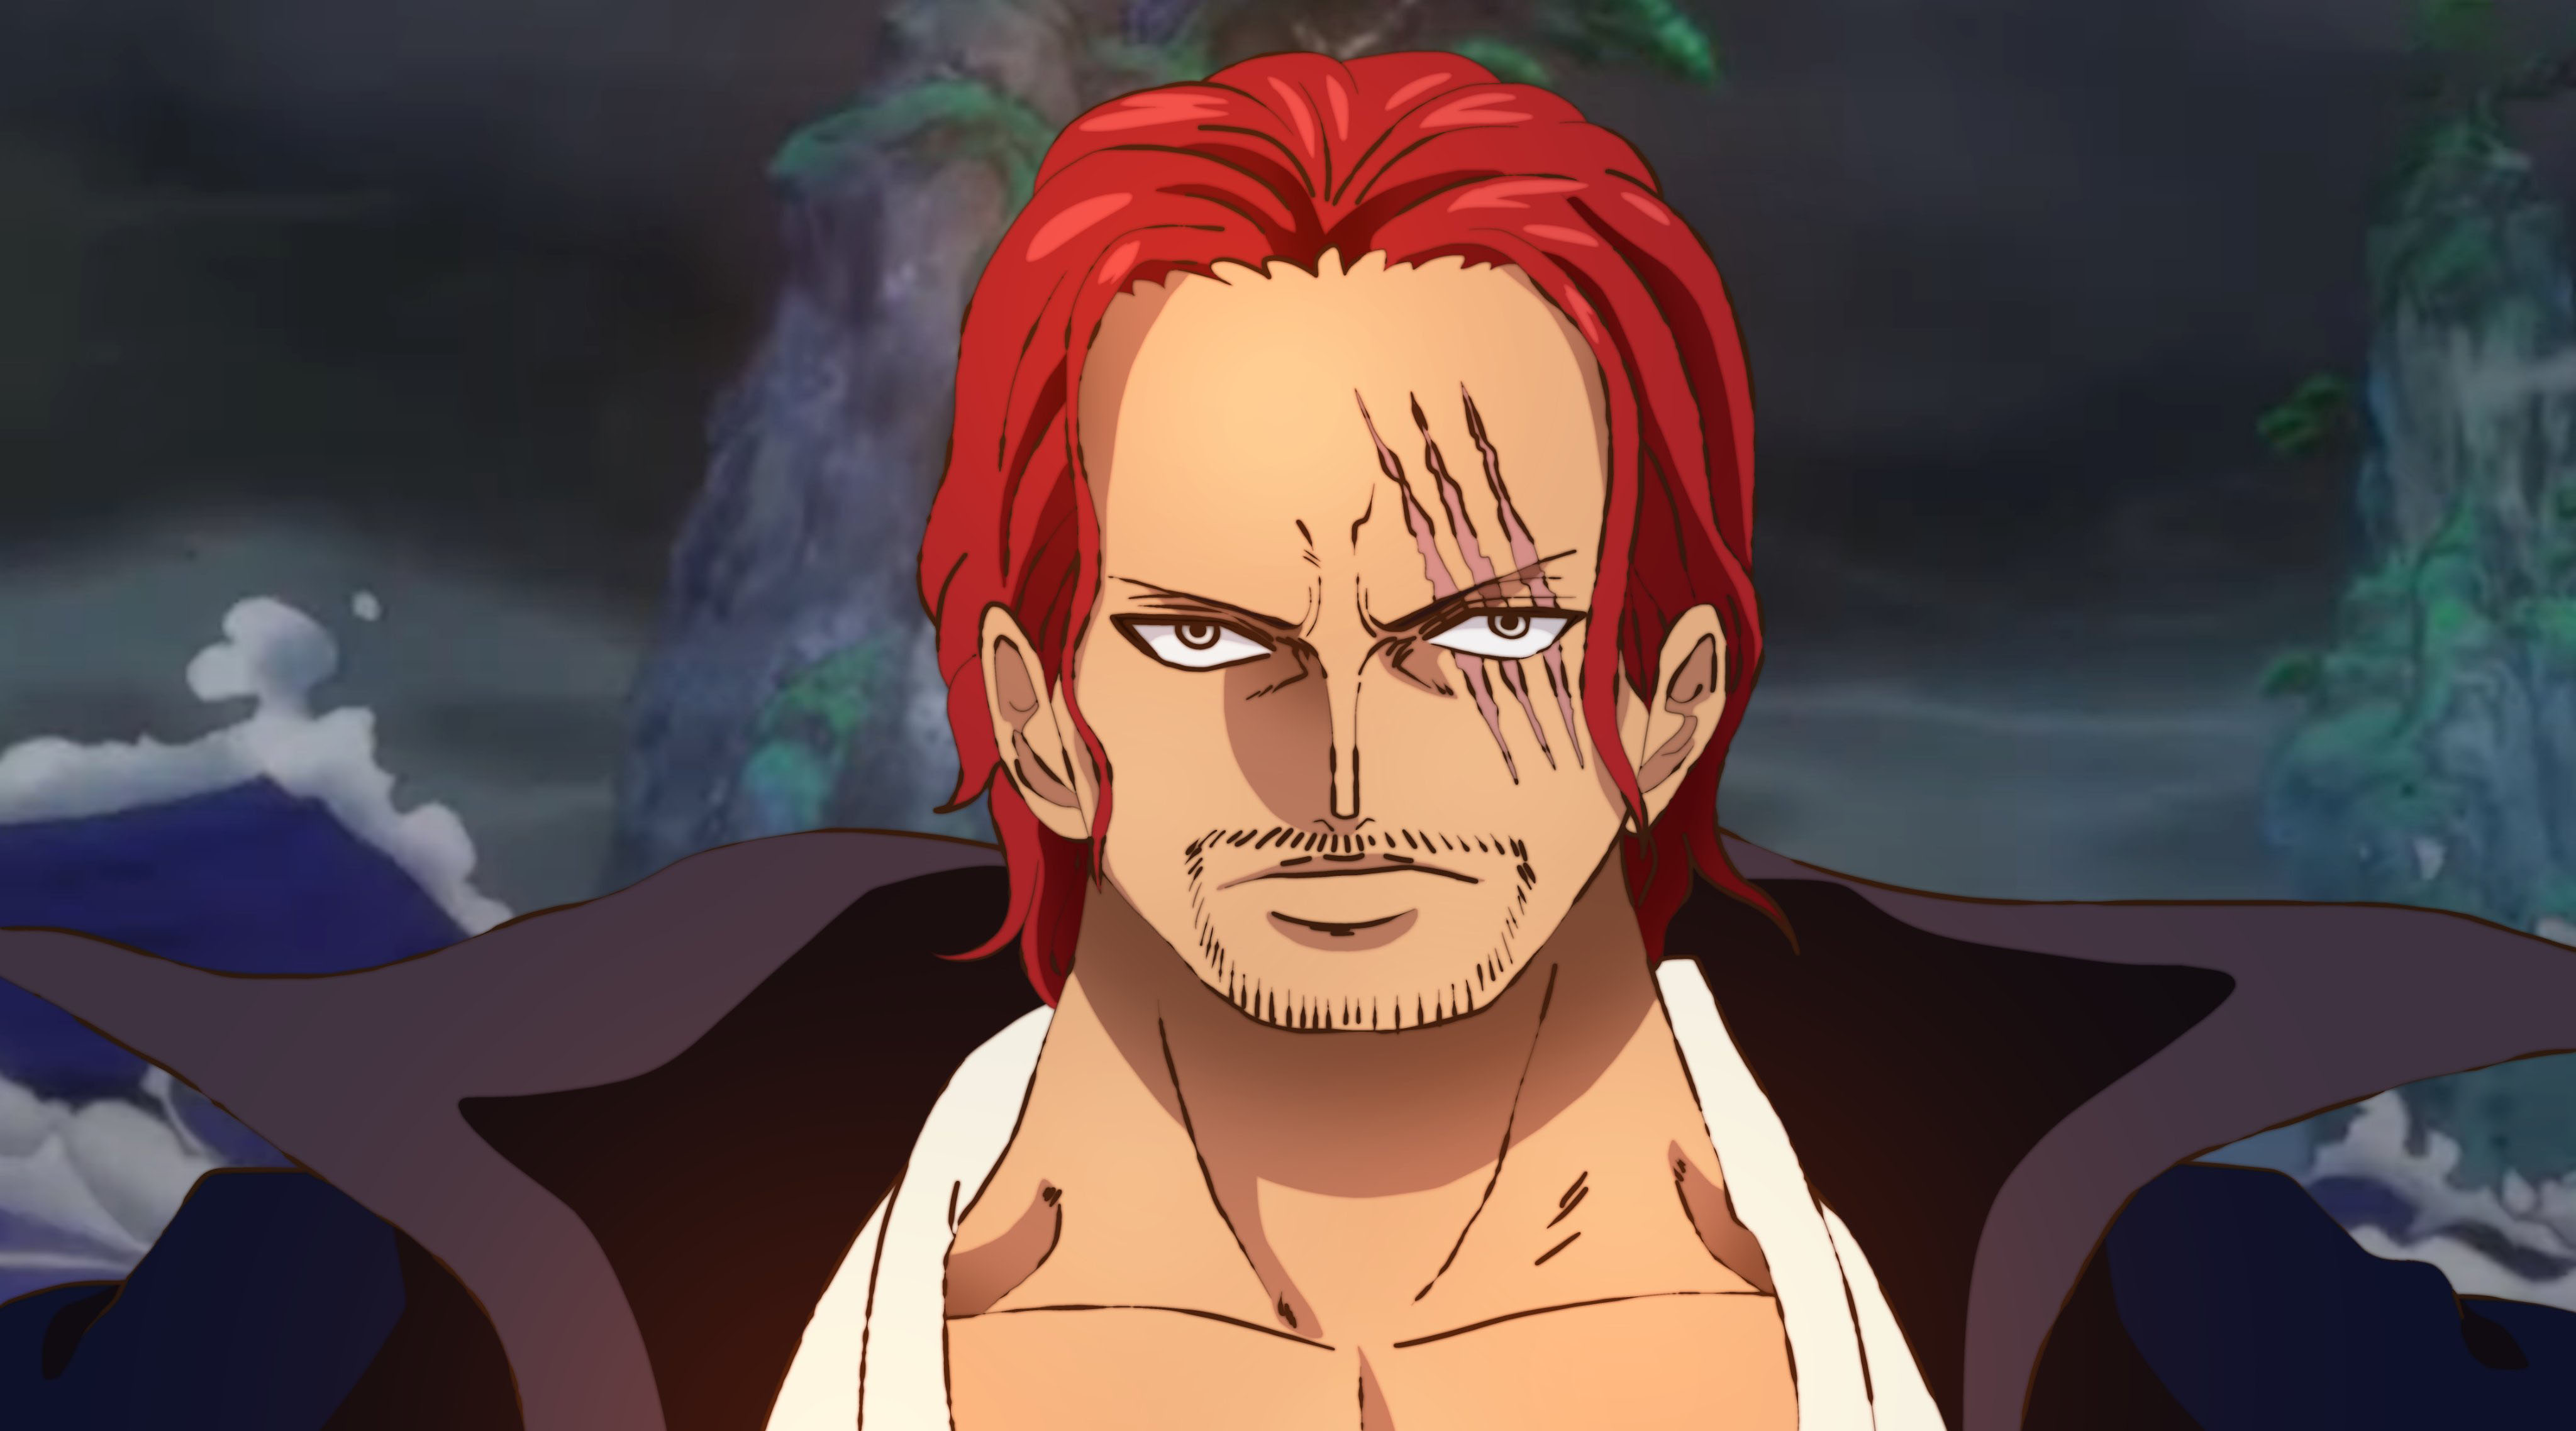 海贼王1055话:红发使用的是顶级霸王色,能让果实能力暂时失效